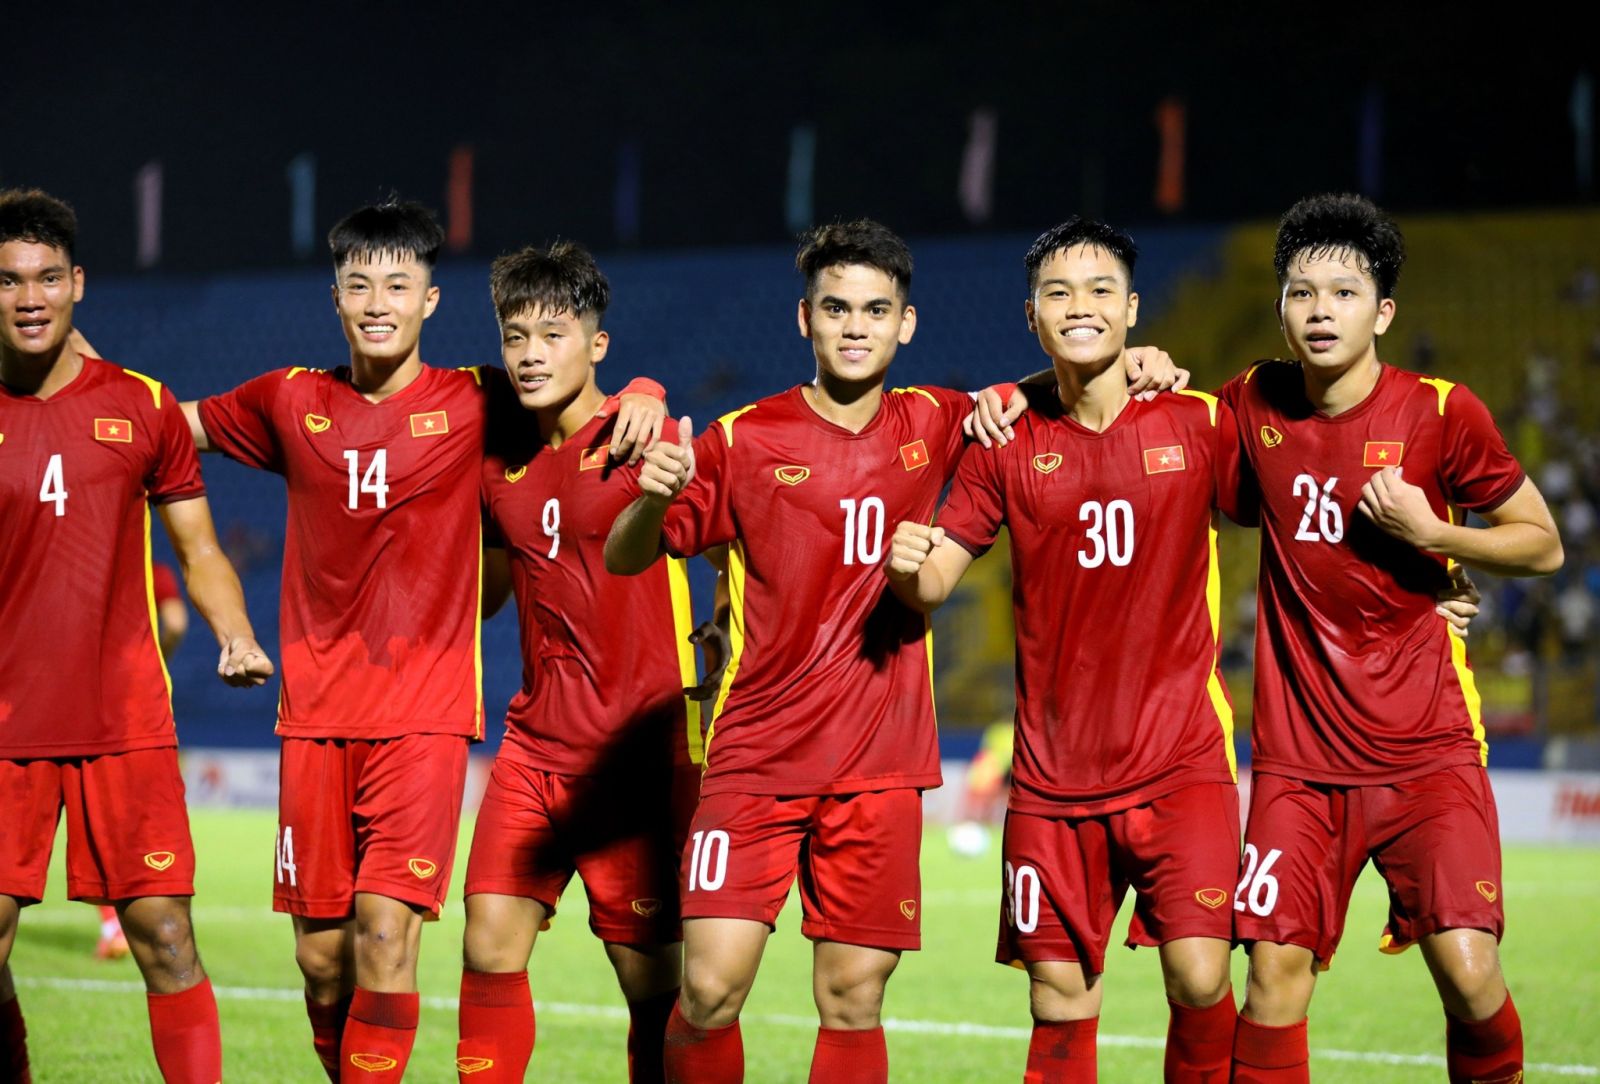 soi kèo U19 Việt Nam vs U19 Thái Lan